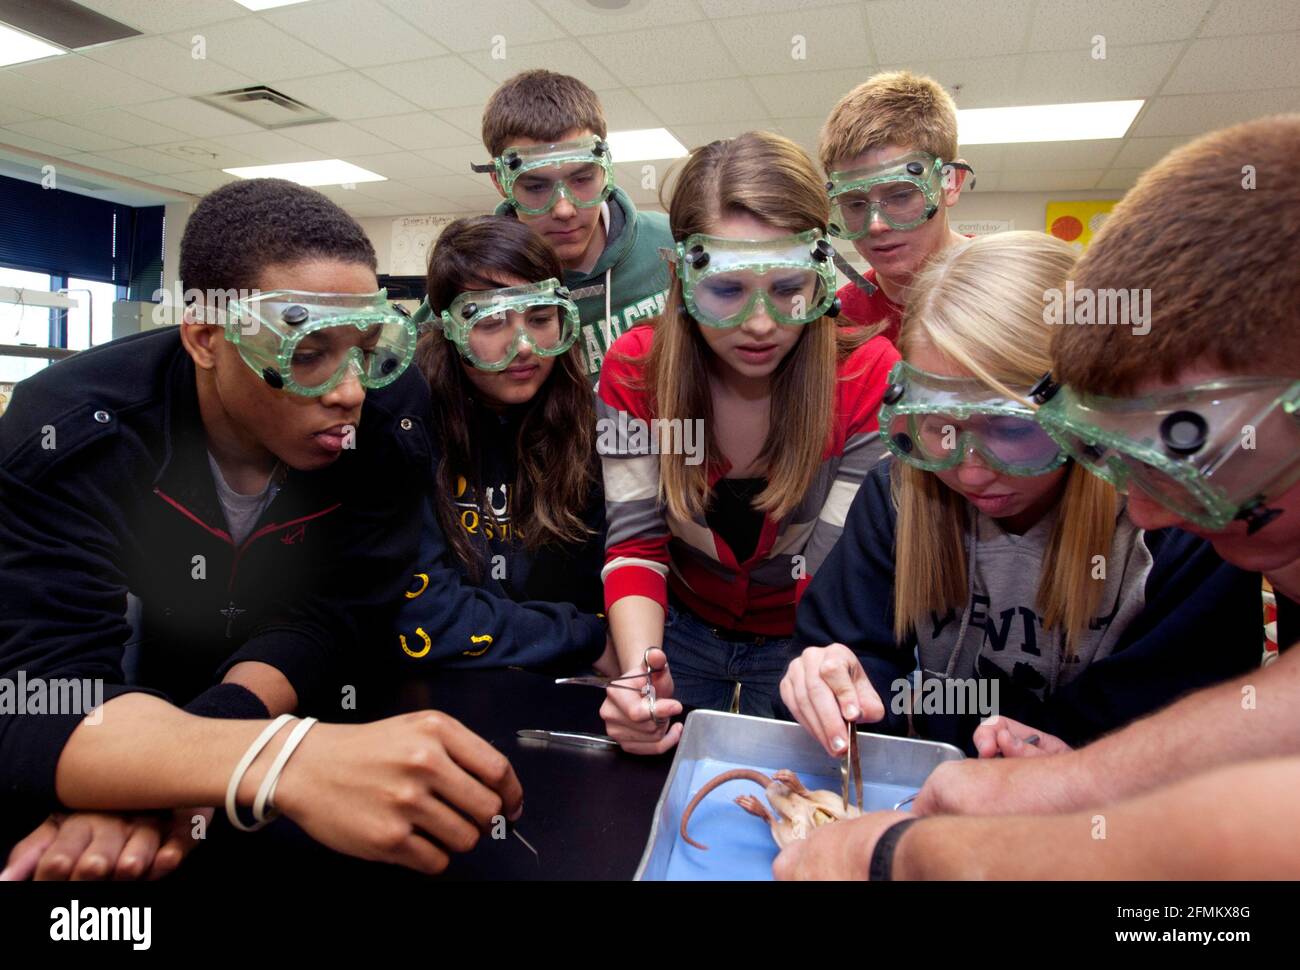 Los estudiantes de secundaria con revestimientos para los ojos diseccionan un pequeño roedor en la clase de biología Foto de stock